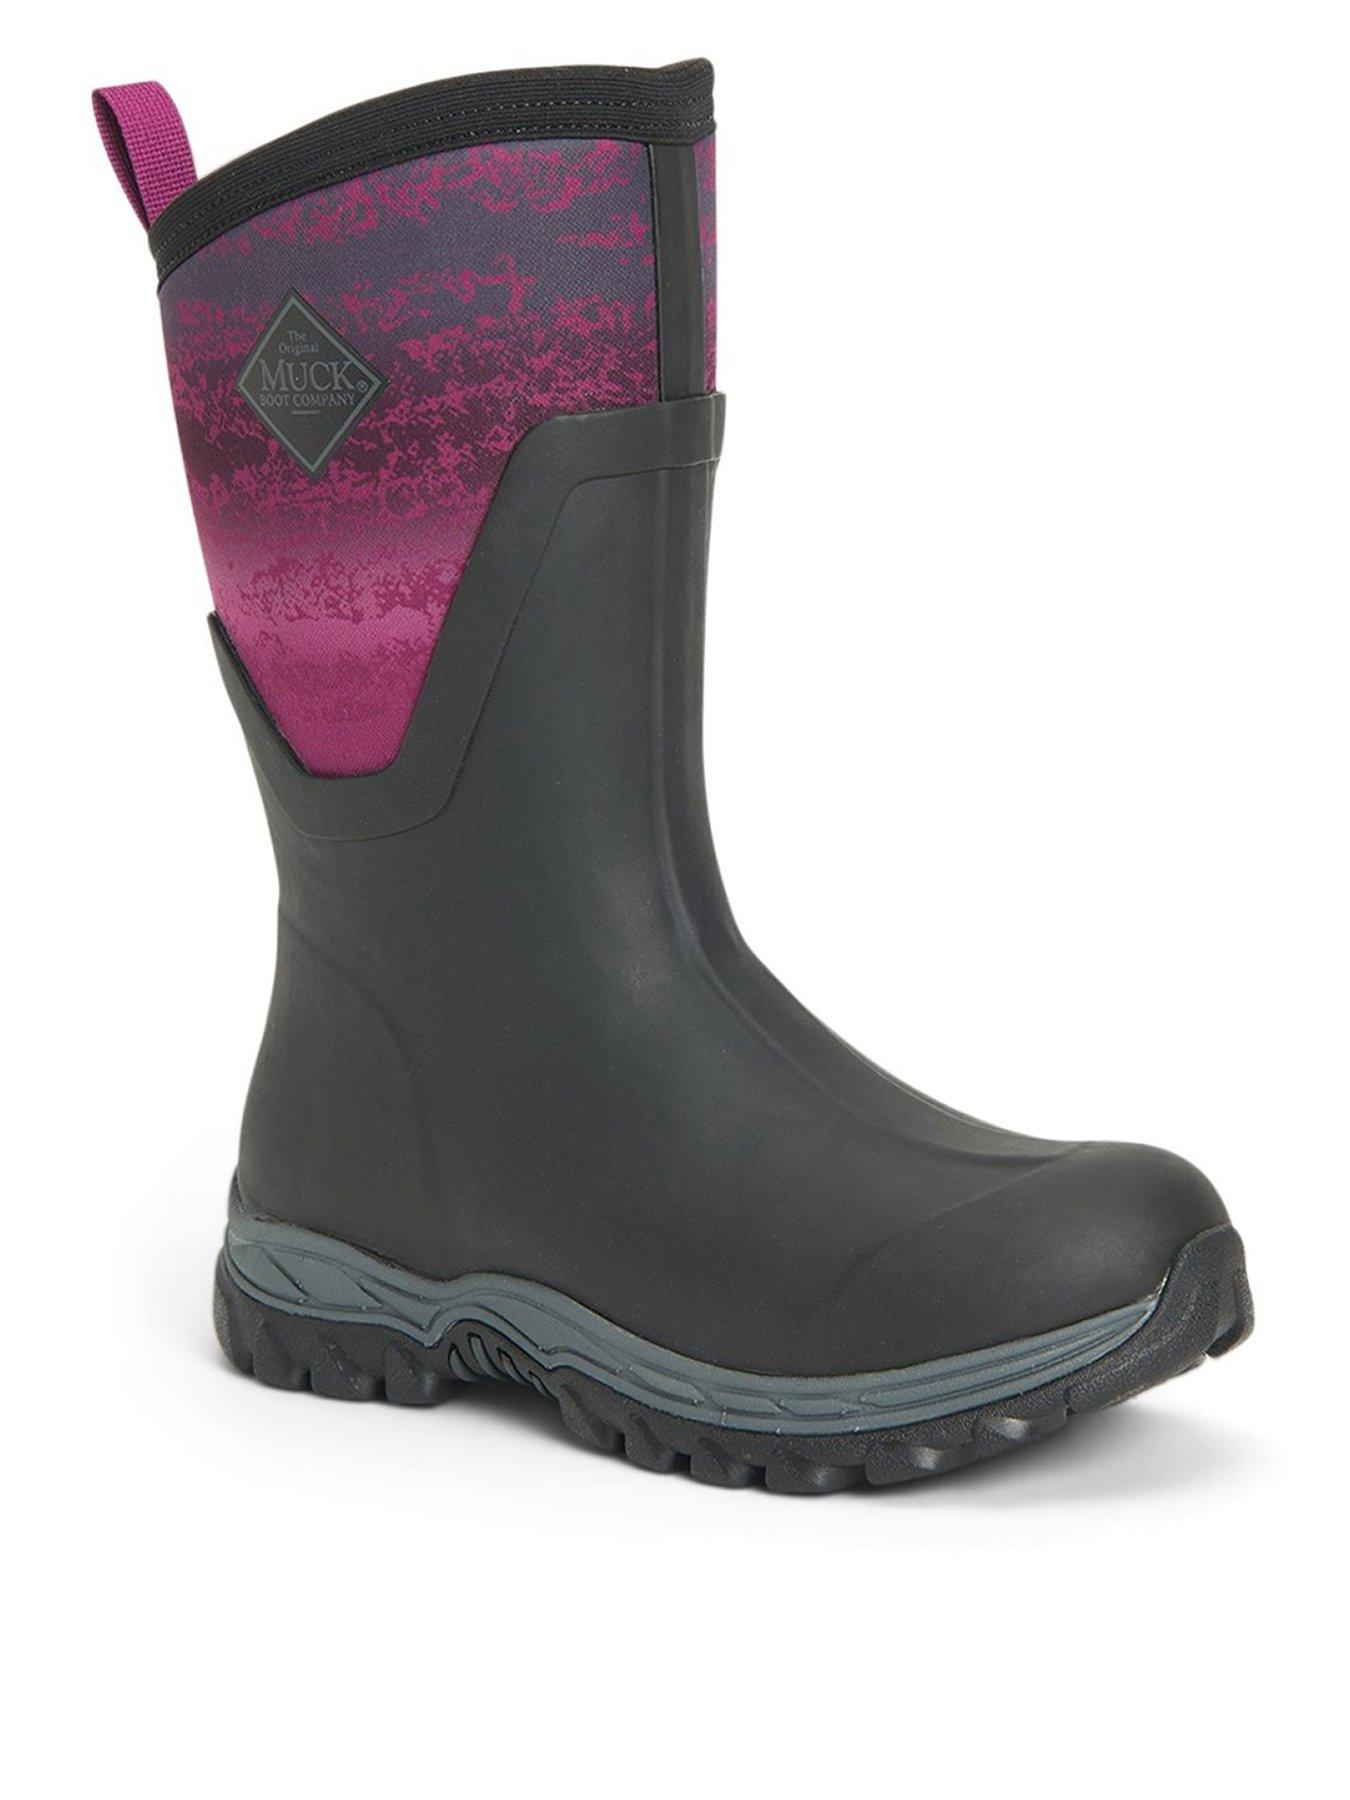 Adults Waterproof Sole Winter Fleece Lined Wellies Snow Farm Ski Muckert Boots Size UK 9 